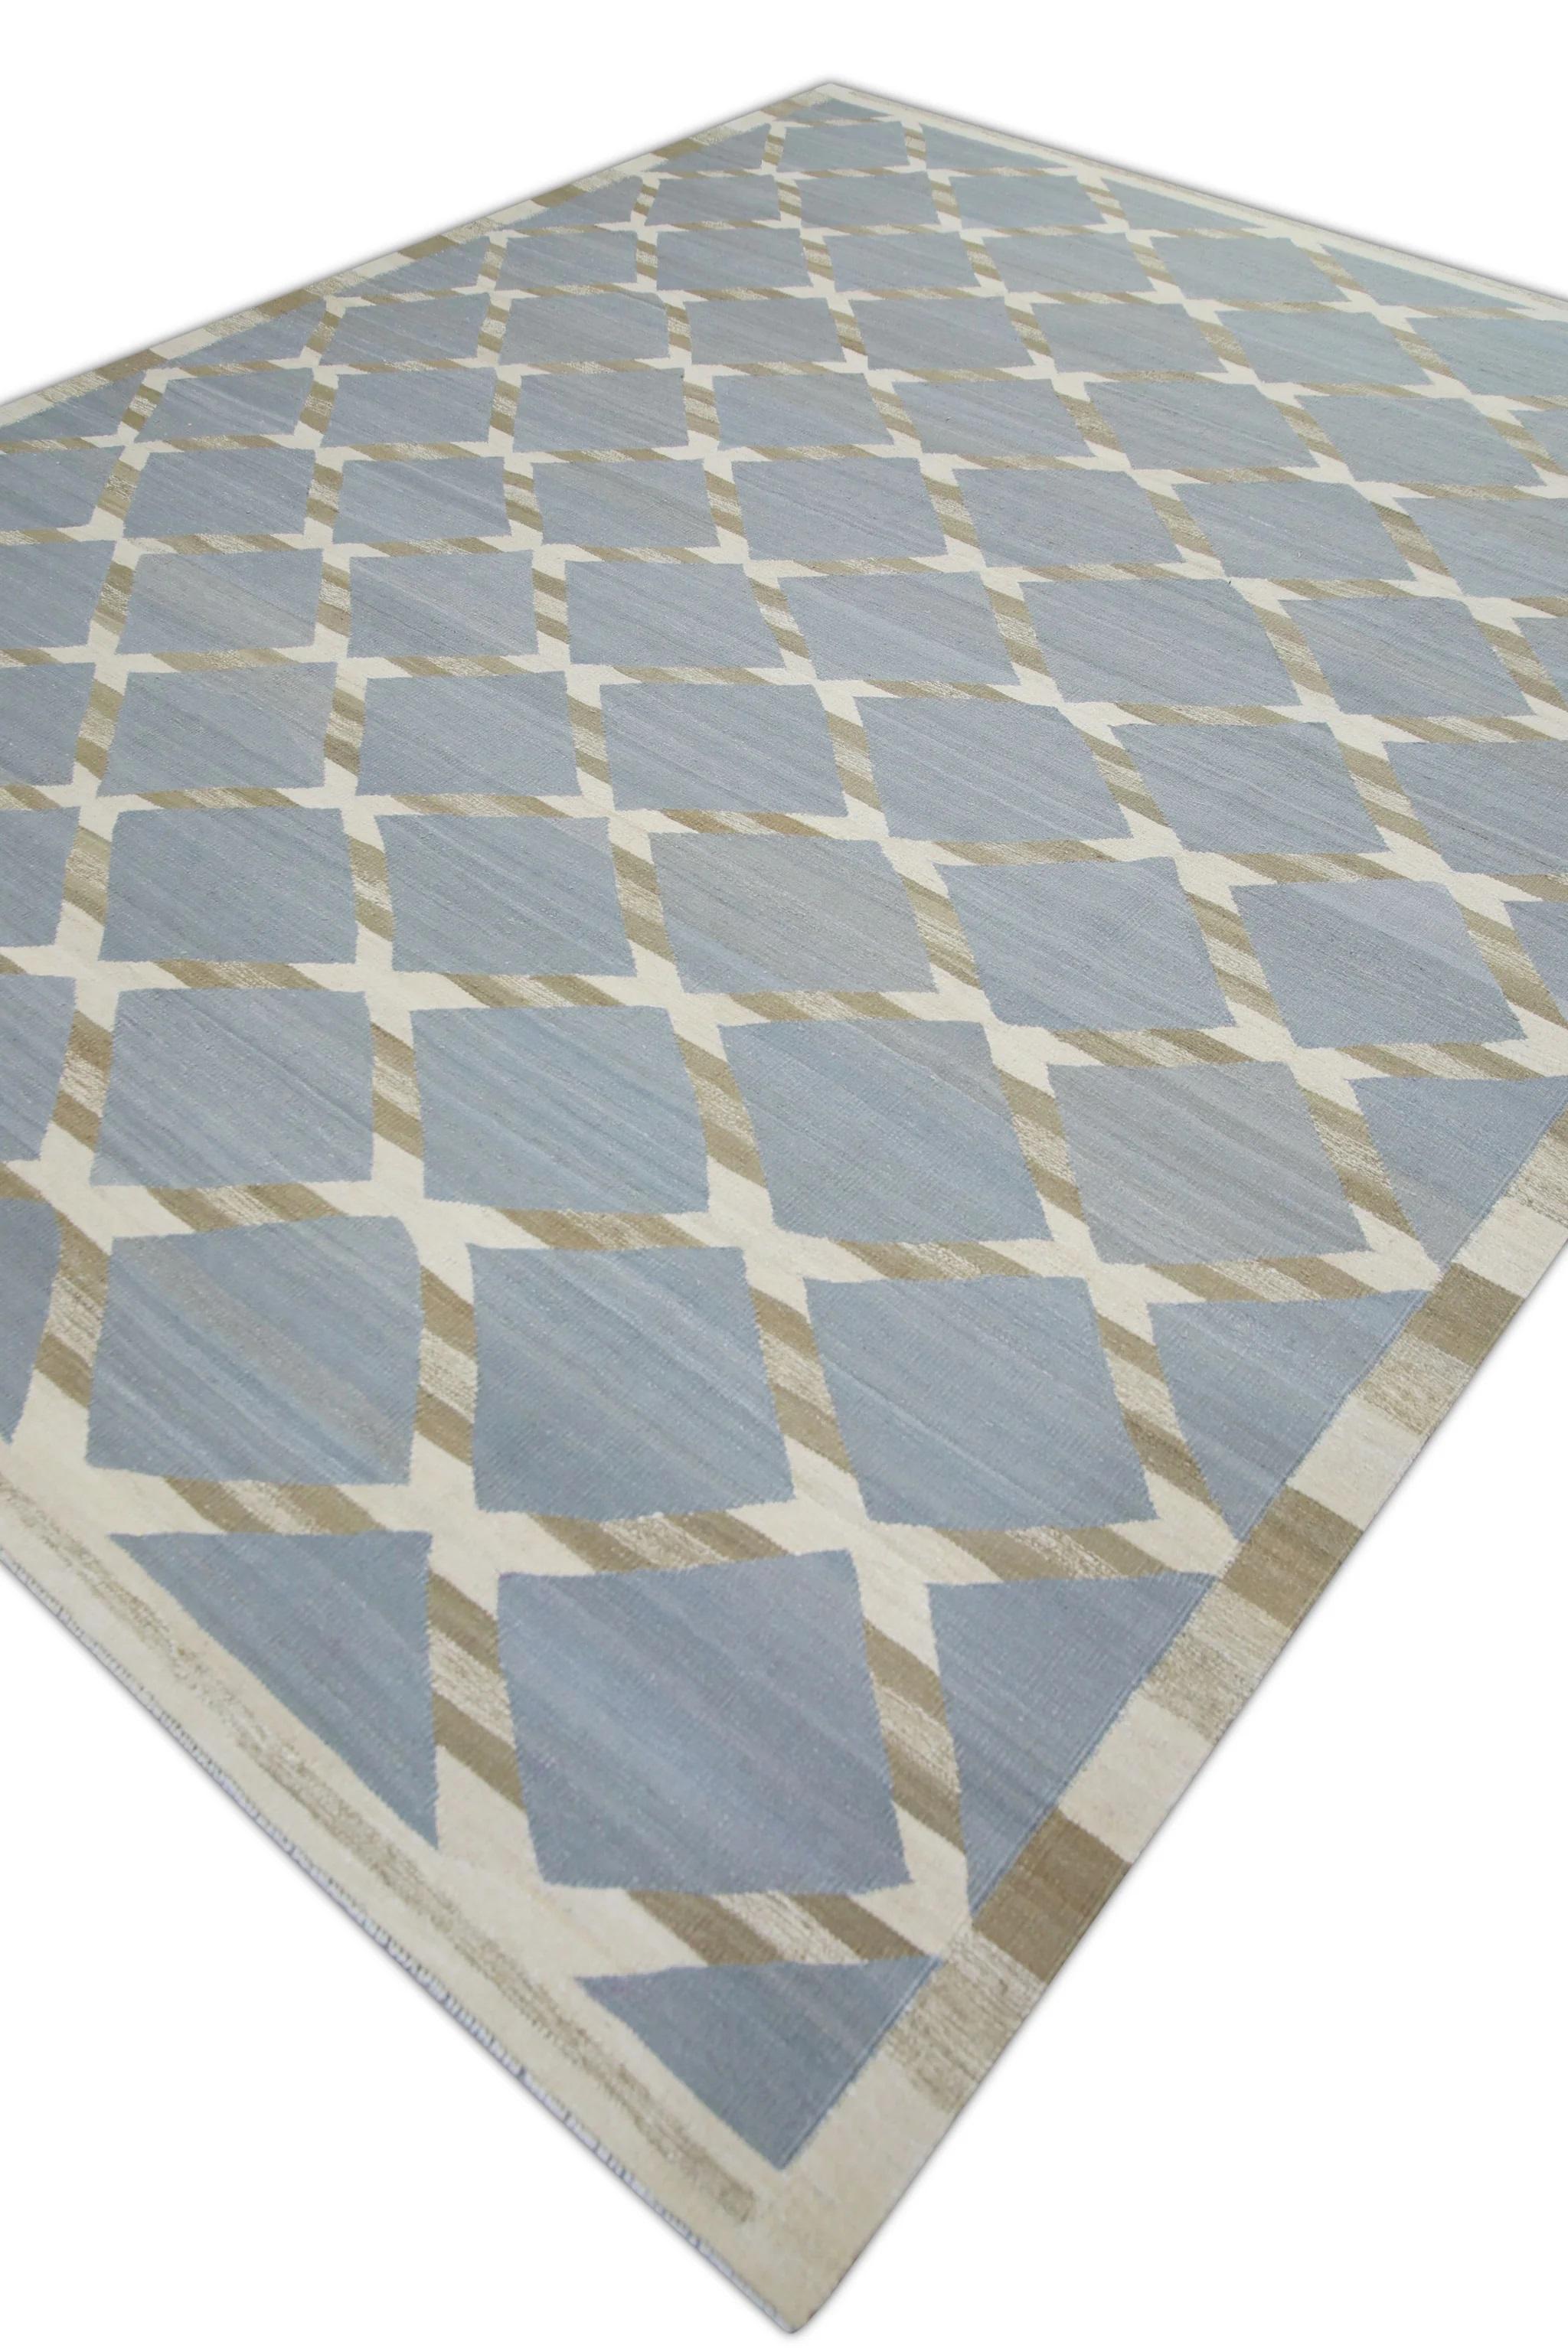 Vegetable Dyed Blue & Brown Geometric Pattern Flatweave Handmade Wool Rug 9'5